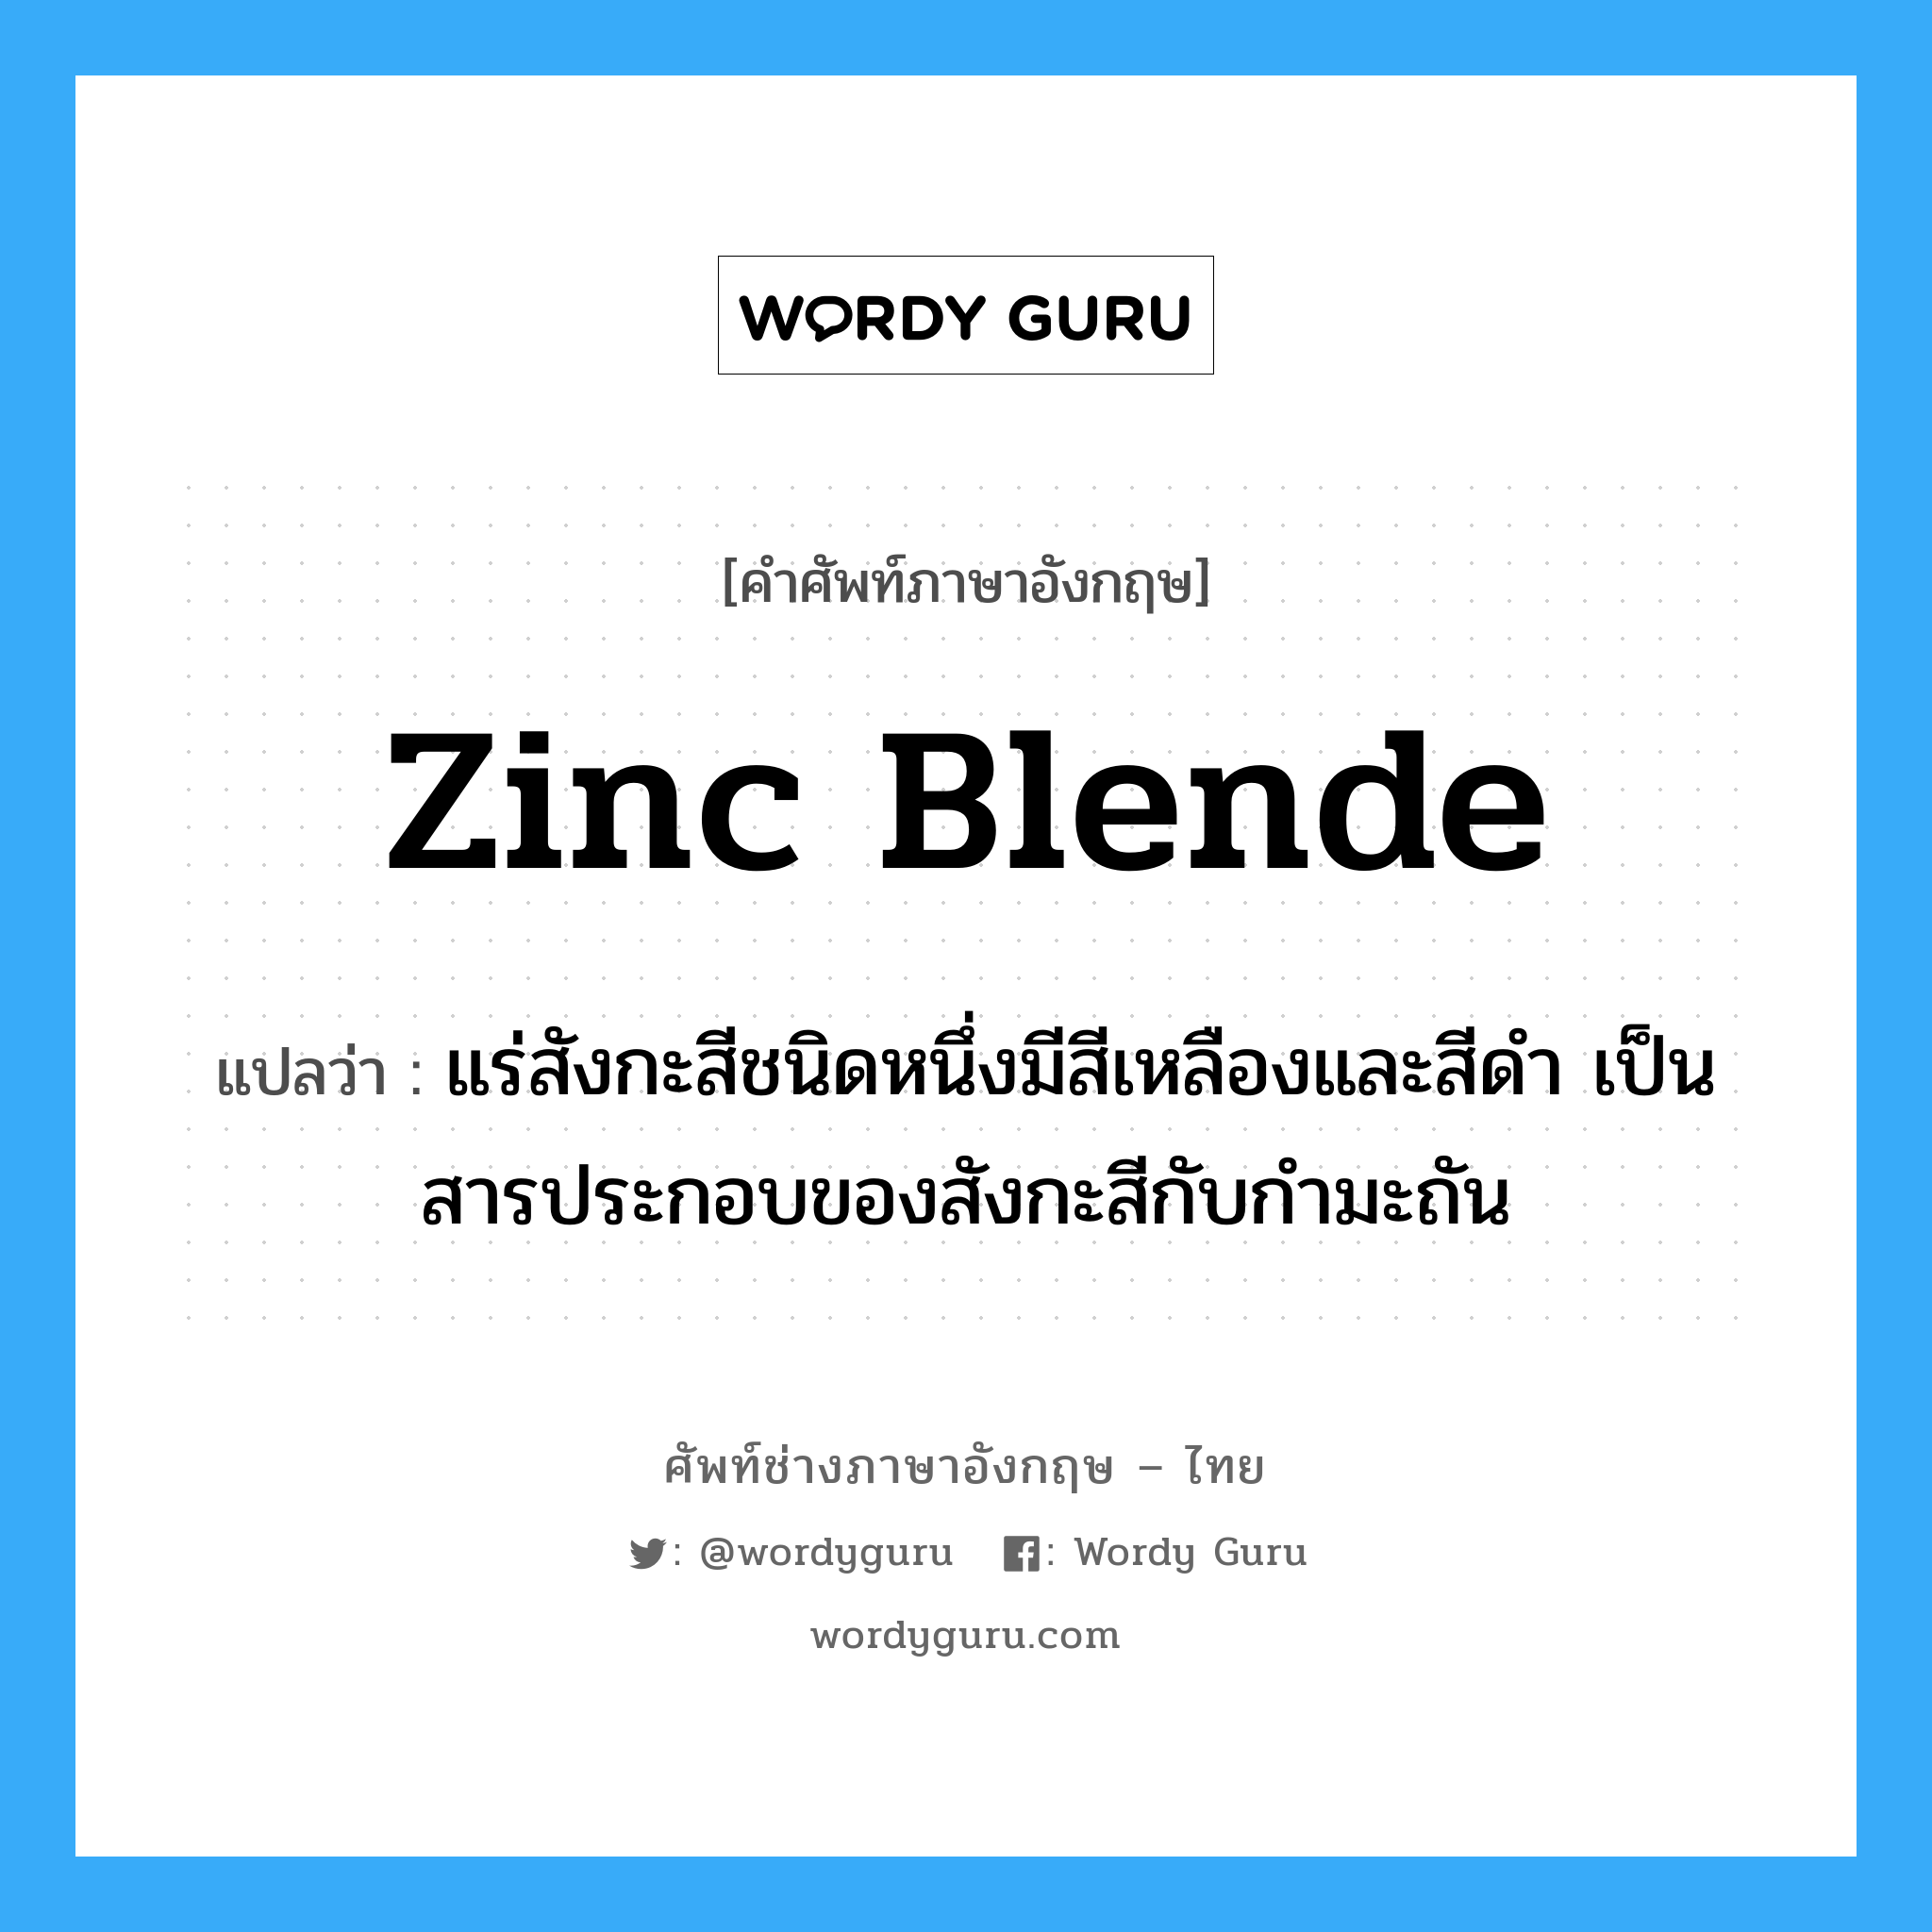 zinc blende แปลว่า?, คำศัพท์ช่างภาษาอังกฤษ - ไทย zinc blende คำศัพท์ภาษาอังกฤษ zinc blende แปลว่า แร่สังกะสีชนิดหนึ่งมีสีเหลืองและสีดำ เป็นสารประกอบของสังกะสีกับกำมะถัน